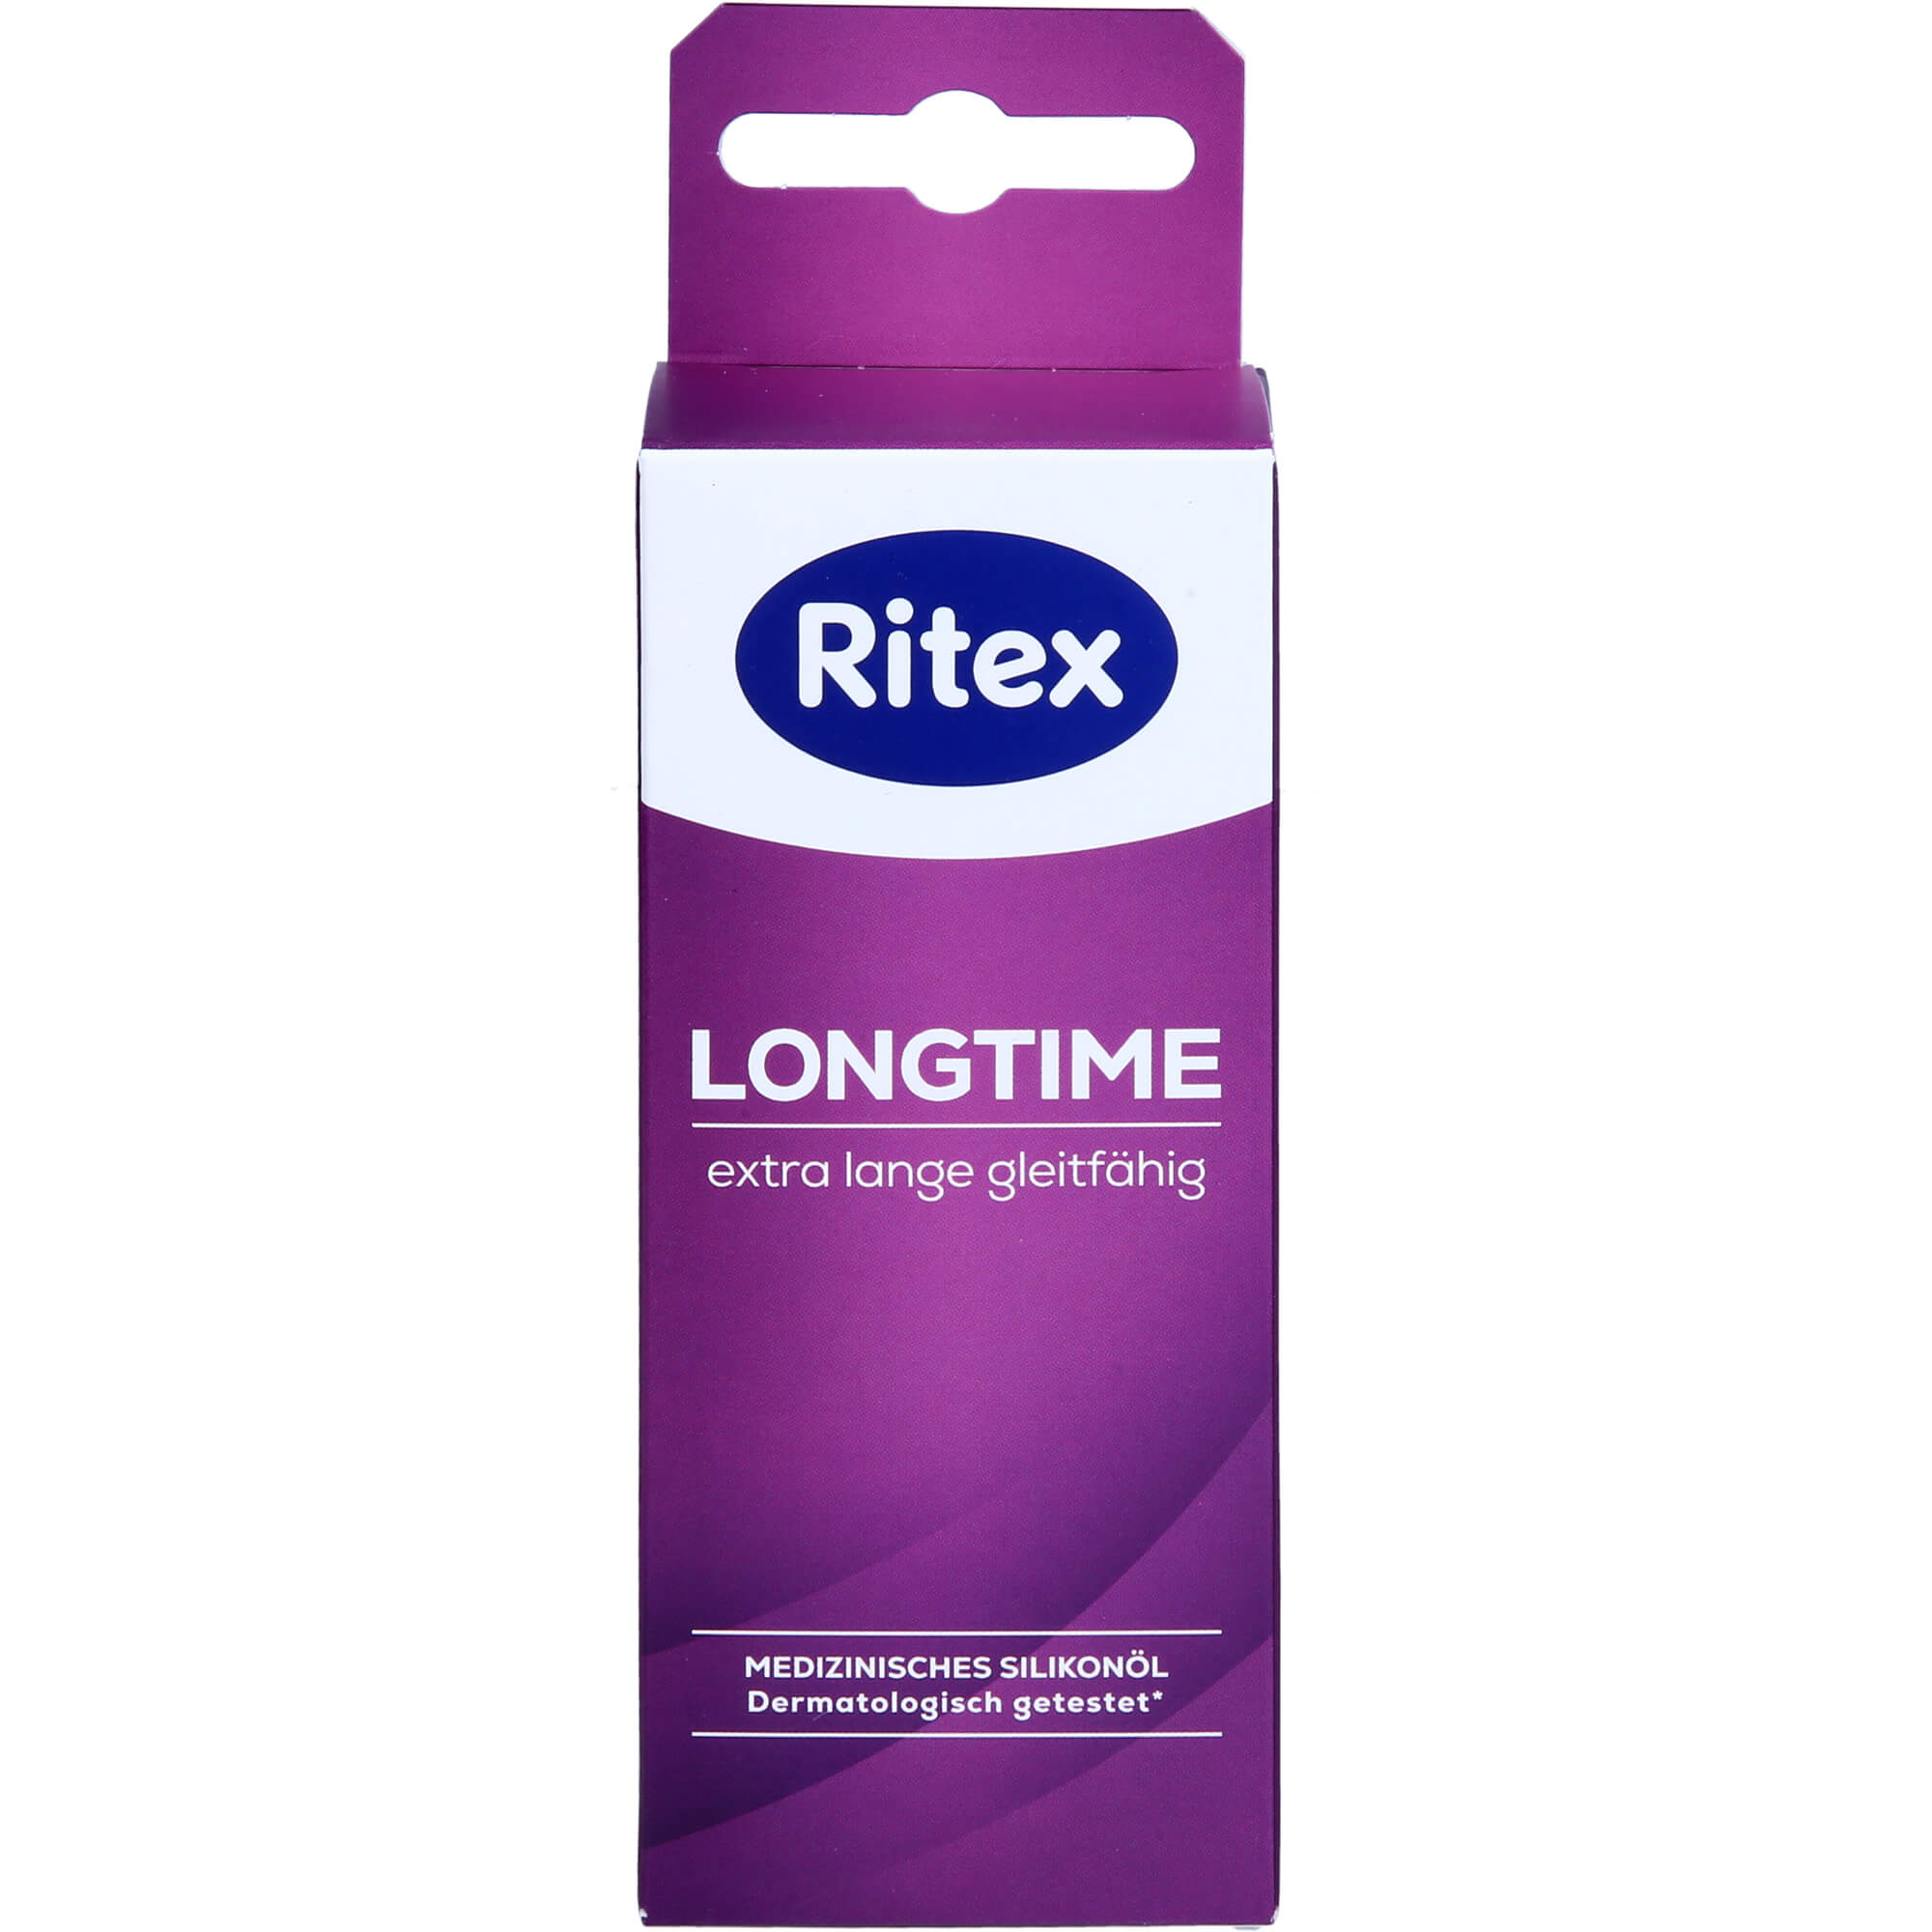 RITEX LongTime Öl Medizinprodukt